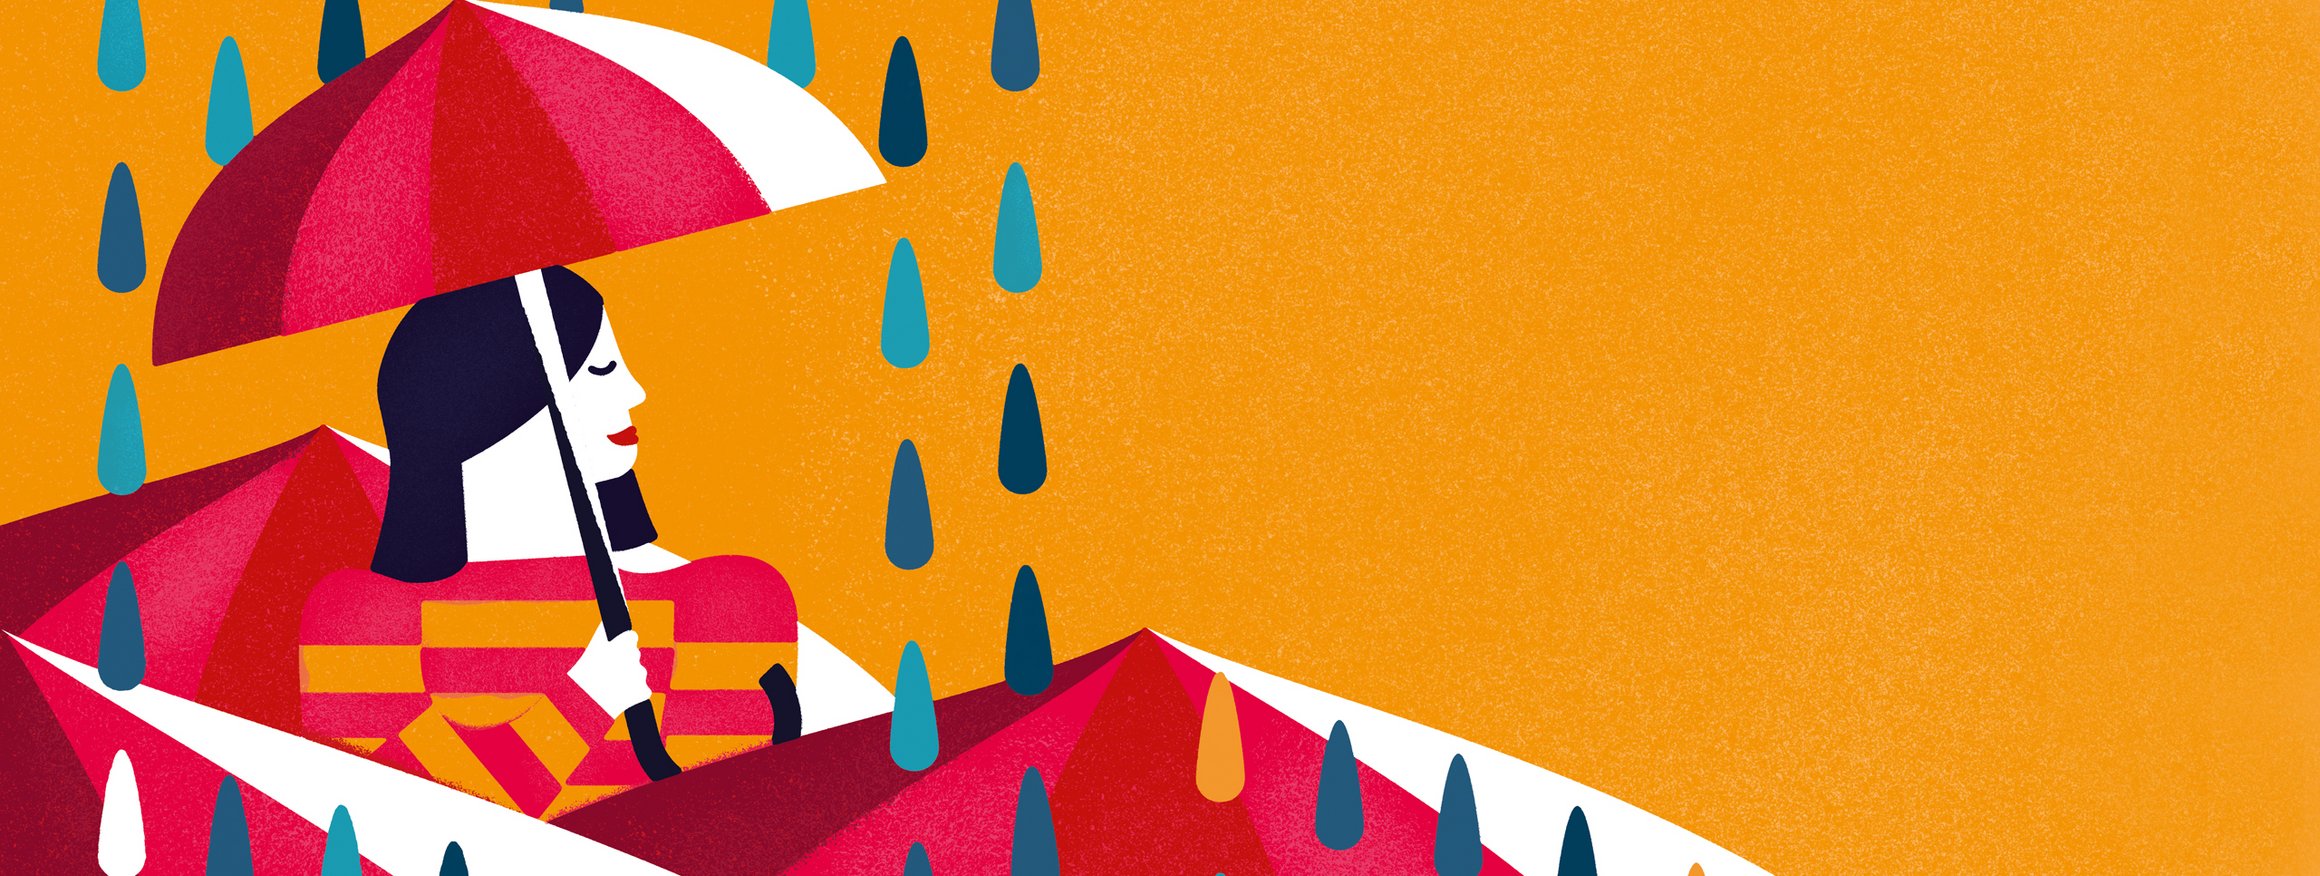 Die Illustration zeigt eine Frau mit Regenschirm, während um sie herum die verschieden farbige Regentropfen fallen